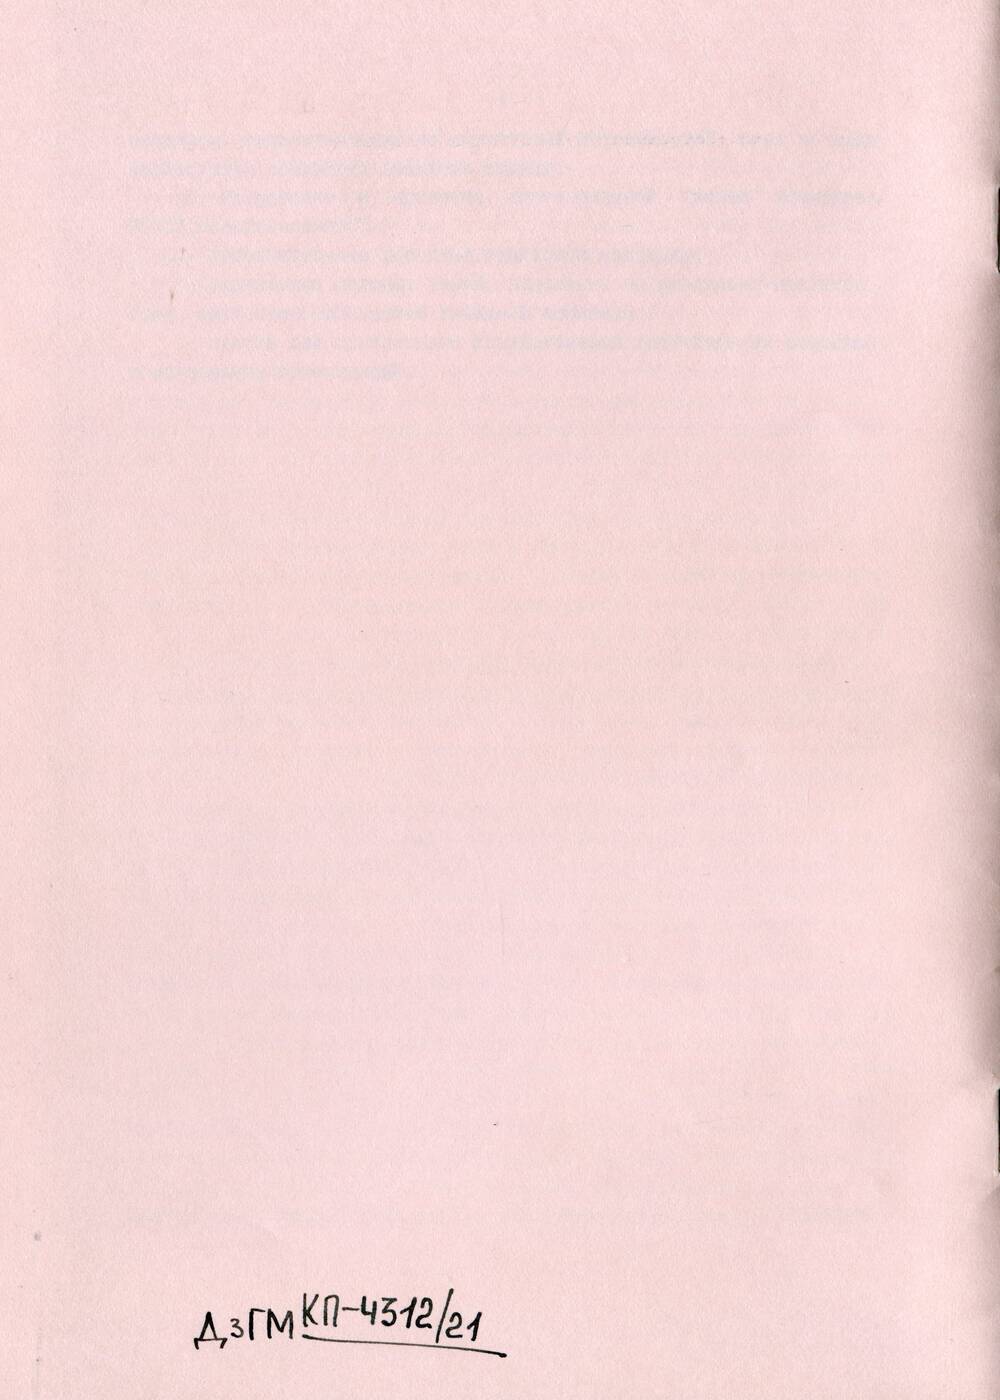 Комплекс материалов съезда комсомольских организаций РСФСР (февраль 1990 г.)